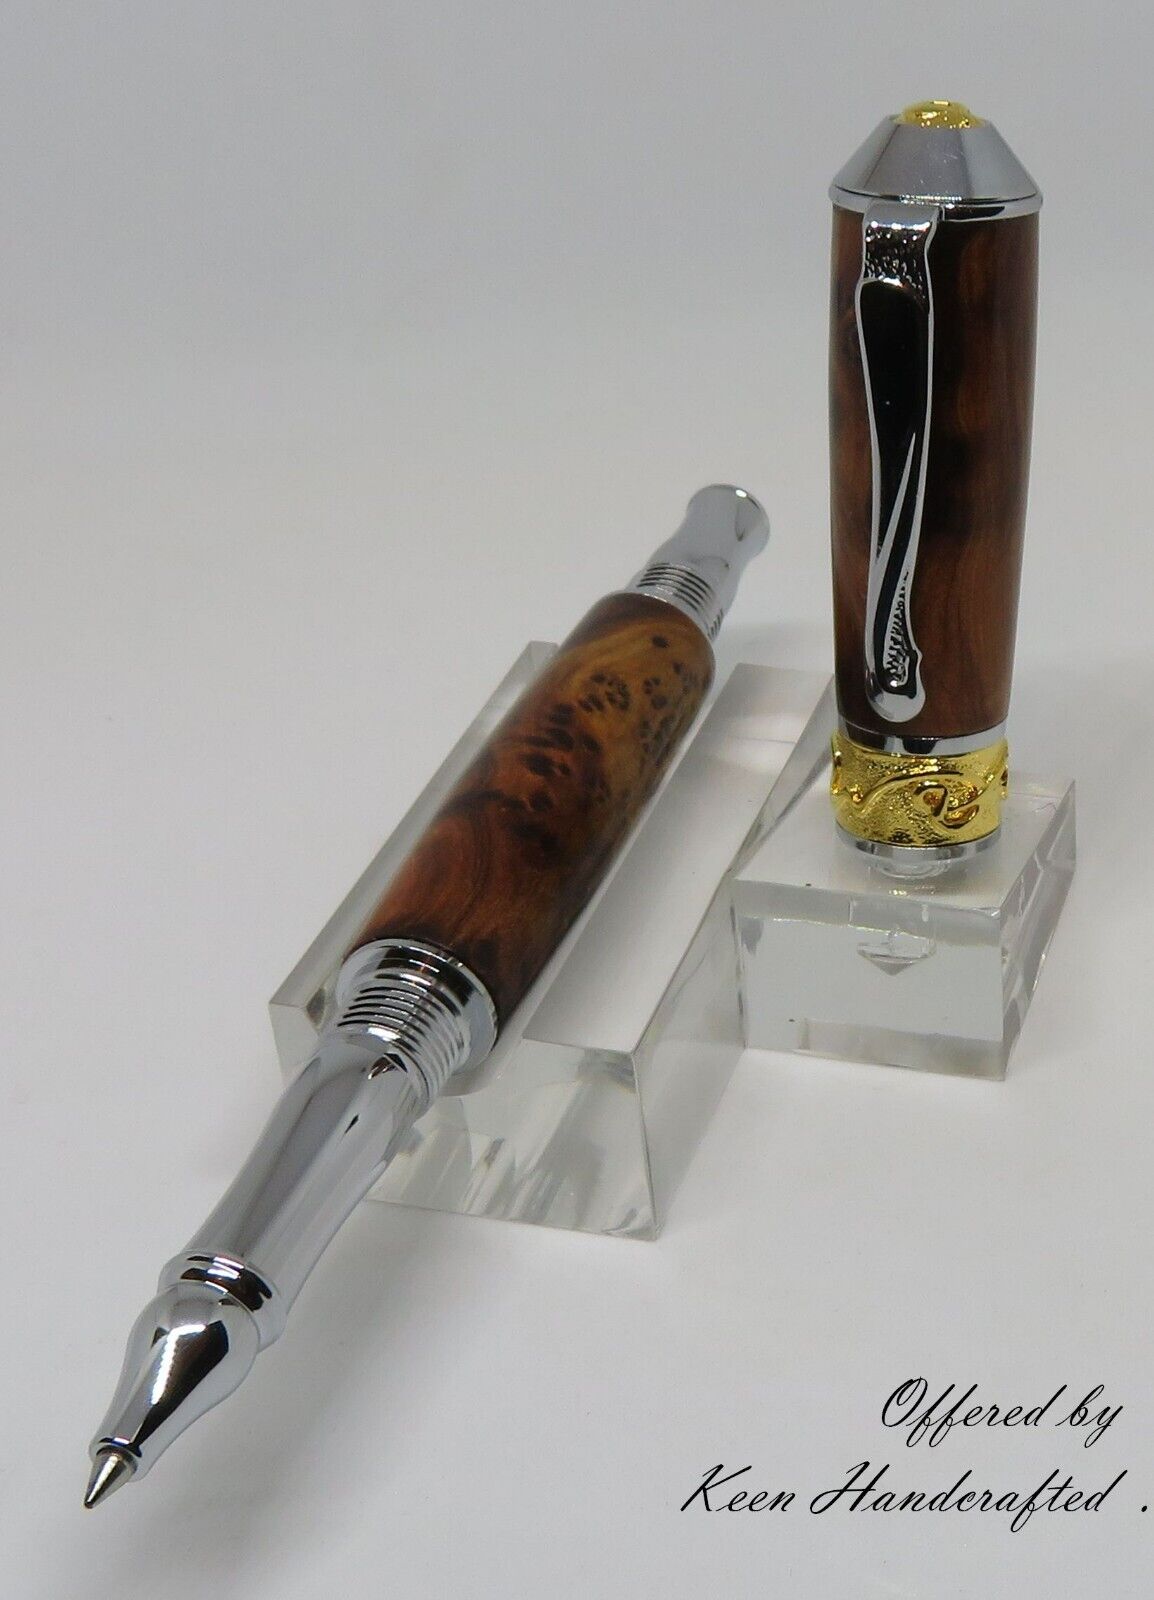 pd - Keen Handcrafted Thuya Burl Broadwell Nouveau Sceptre Chrome/22kt Gold Pen